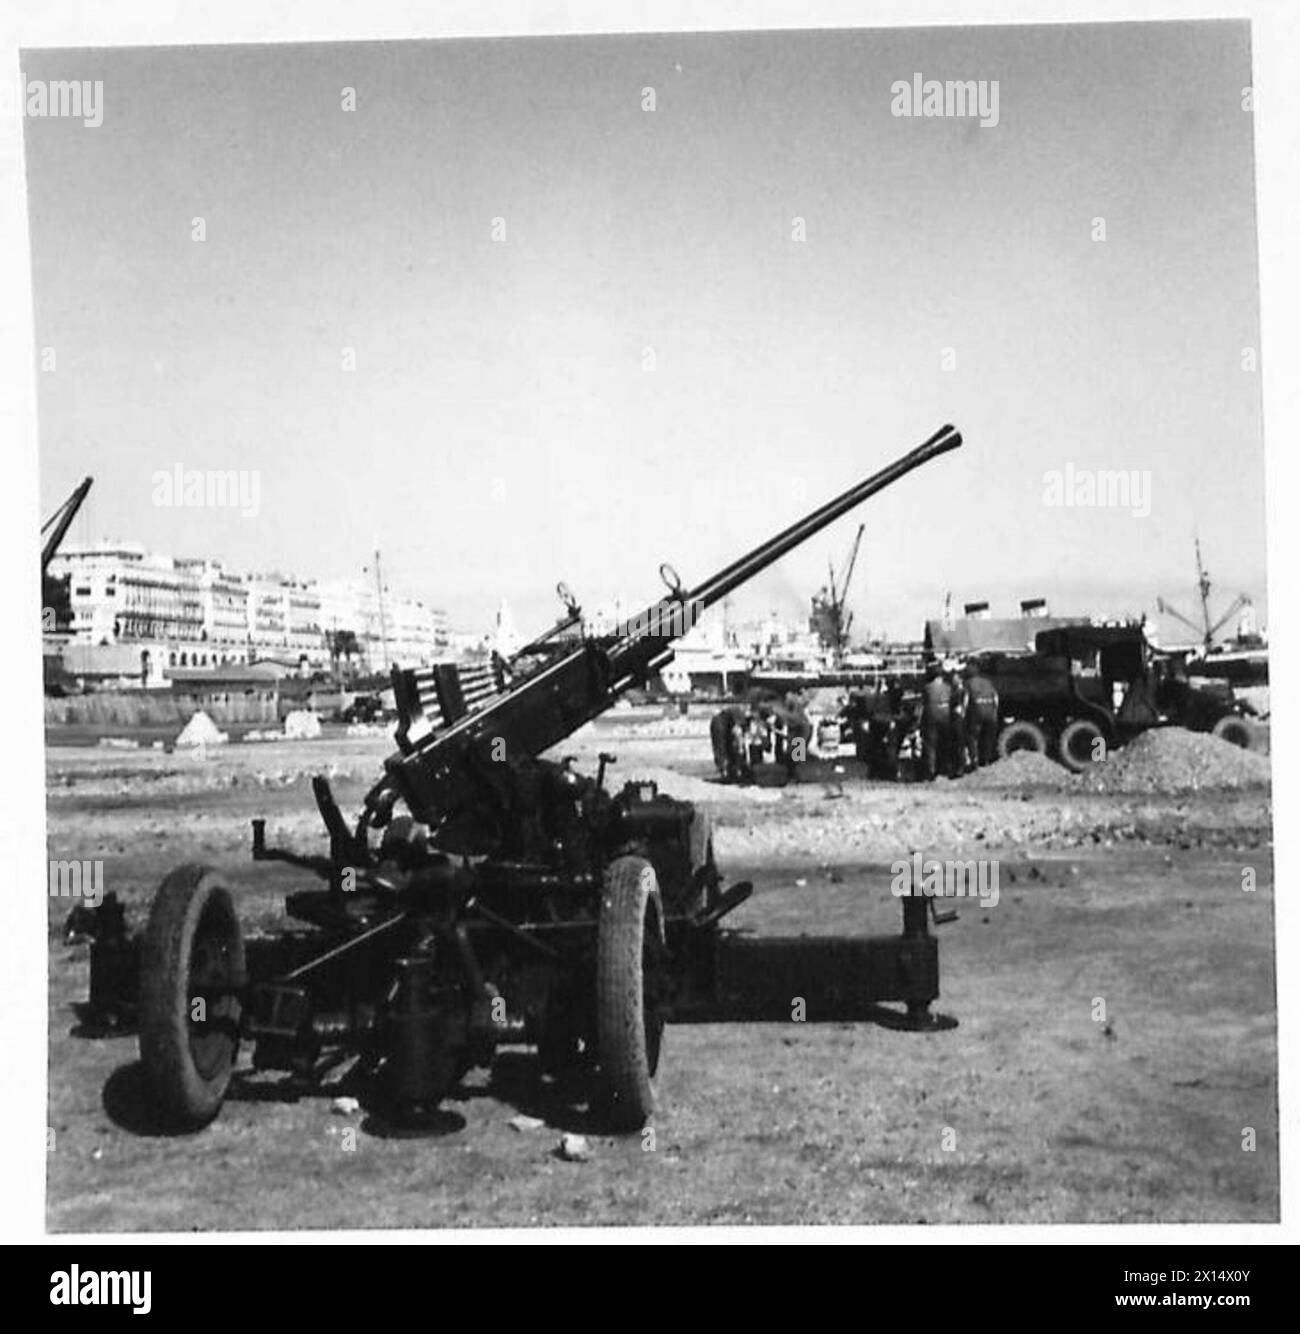 L'OPERAZIONE TORCIA, NOVEMBRE 1942 - Un cannone antiaereo Bofors da 40 mm della 78th Infantry Division britannica presso i moli di Algeri catturati, 9 novembre 1942 Royal Navy, US Army, British Army, British Army, 78th Infantry Division Foto Stock